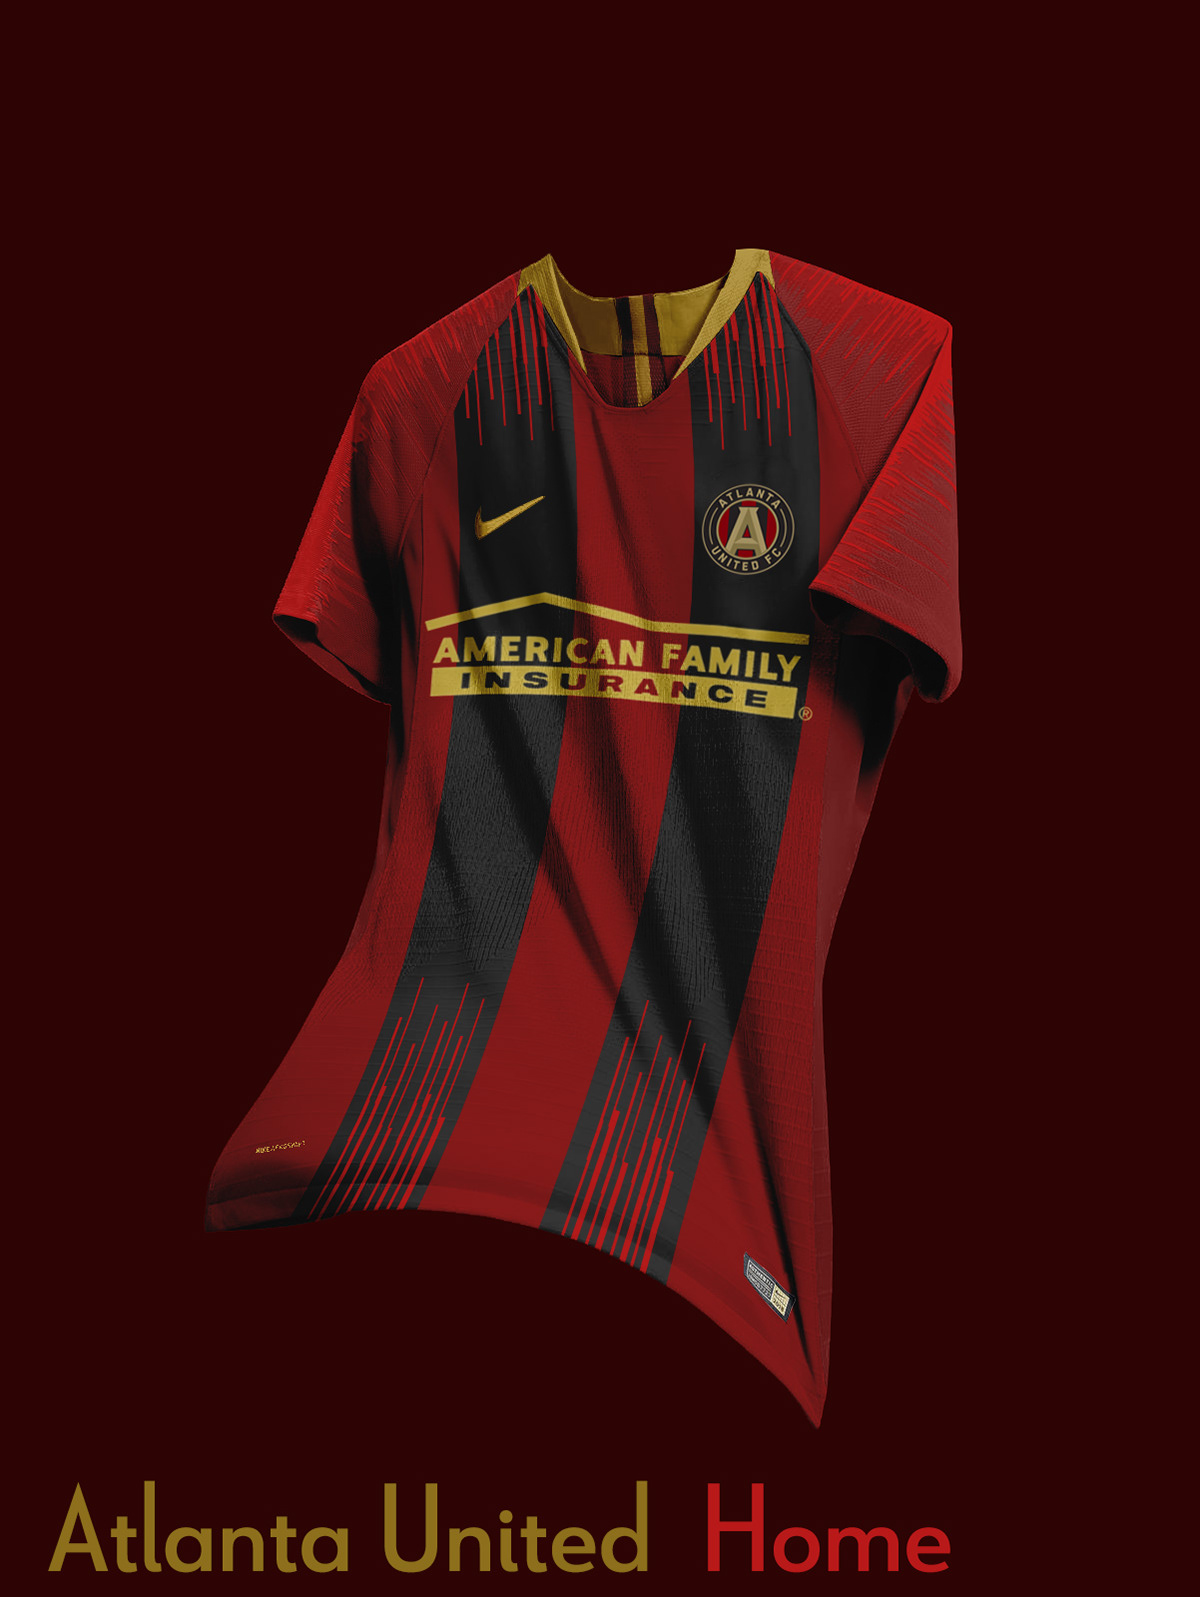 new atlanta united jersey 2019